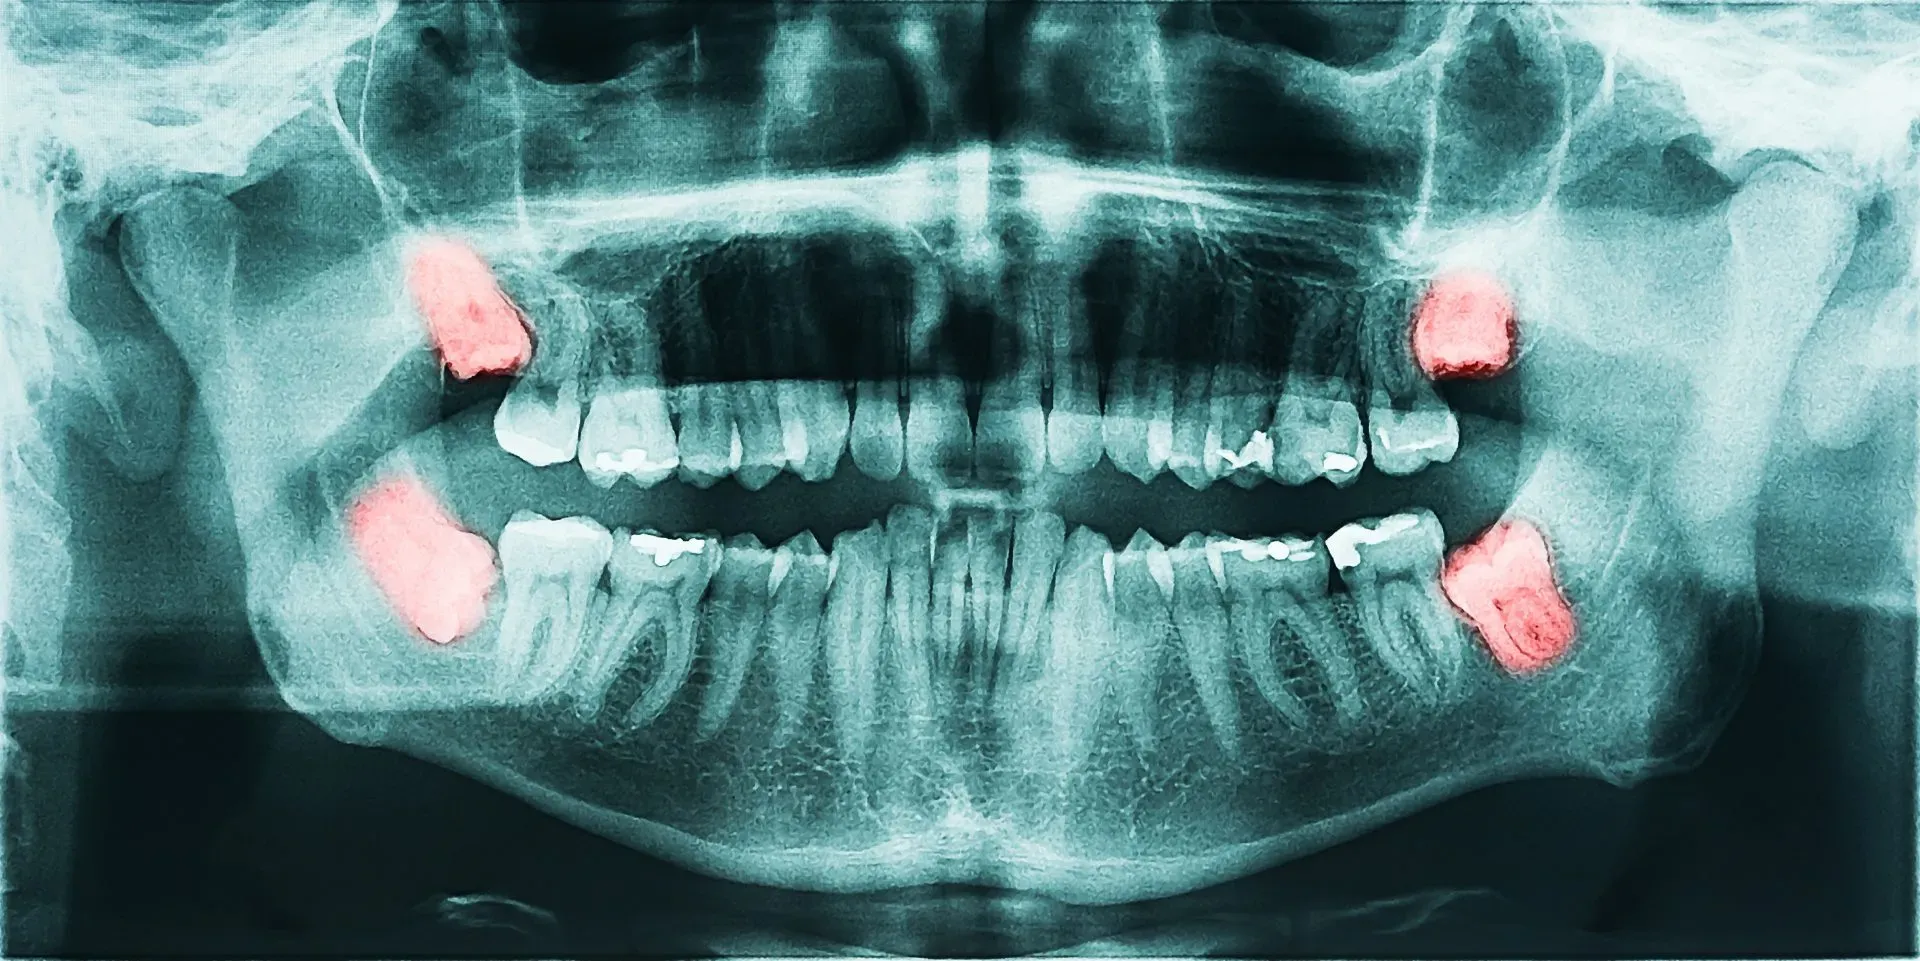 Răng khôn mọc lệch tạo khe hở nhỏ với răng bên cạnh, dễ mắc vướng thức ăn